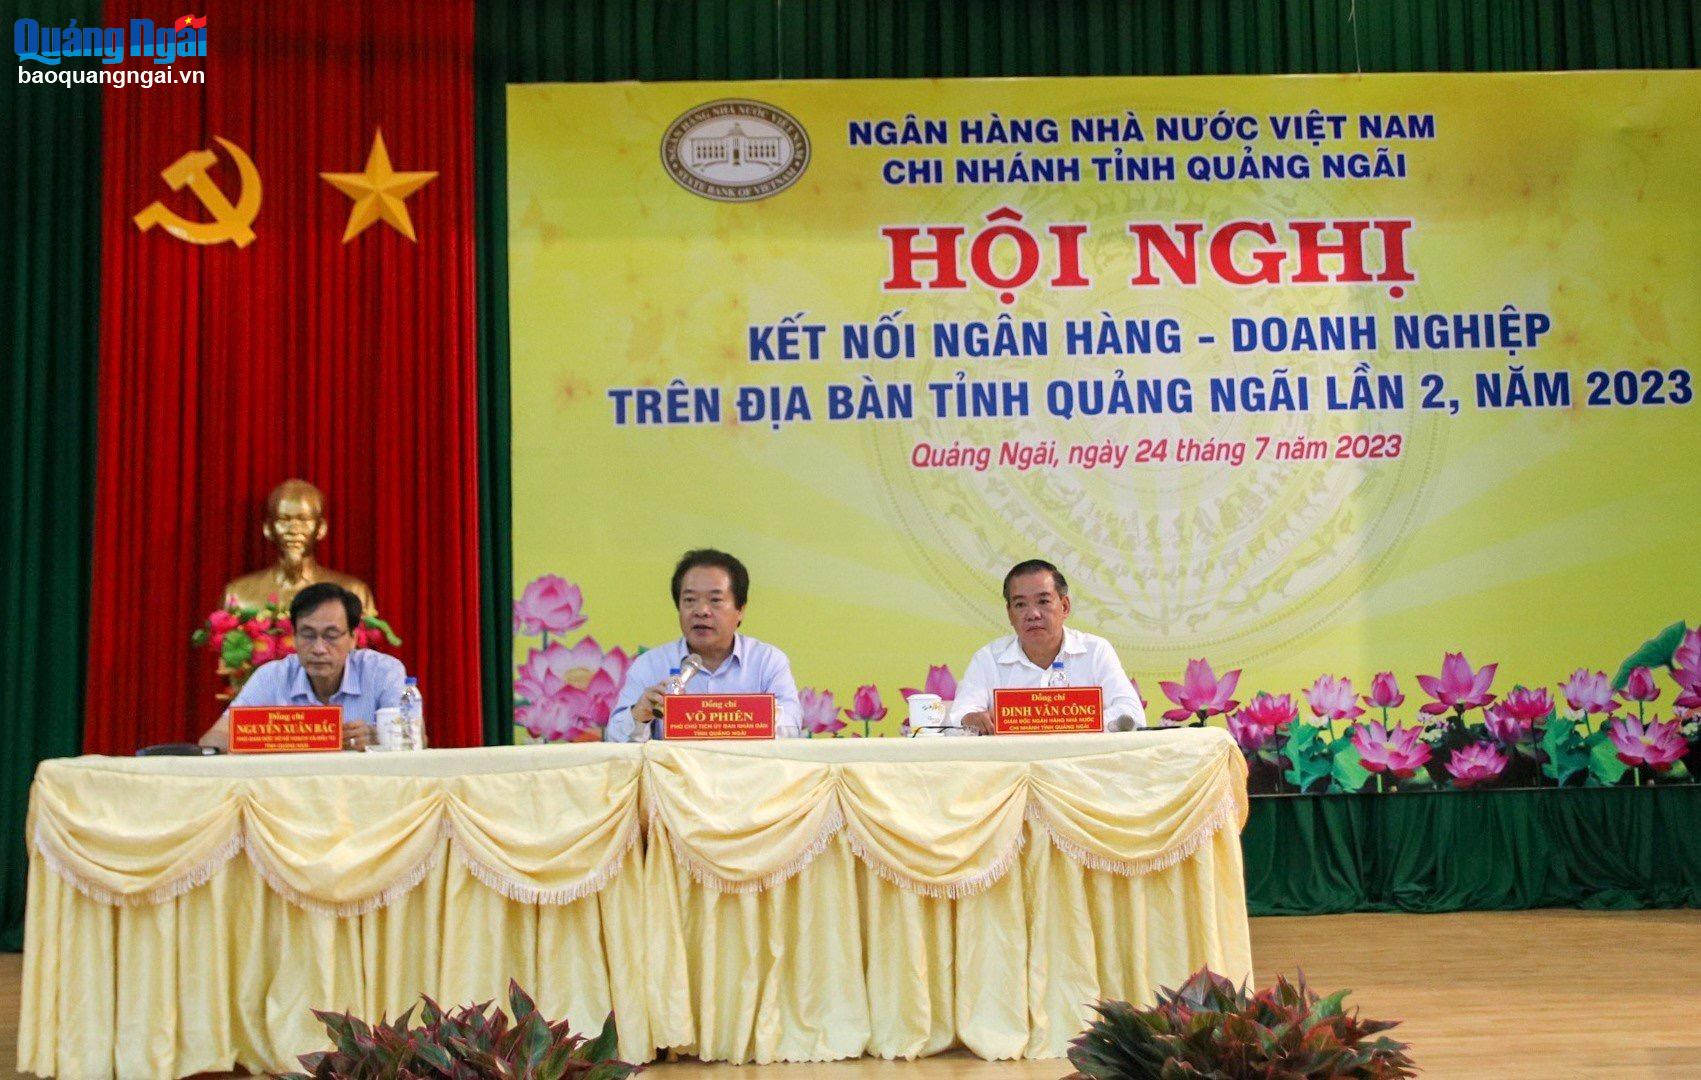 Từ đầu năm đến nay, Ngân hàng Nhà nước Việt Nam - Chi nhánh Quảng Ngãi đã hai lần tổ chức hội nghị kết nối ngân hàng - doanh nghiệp.